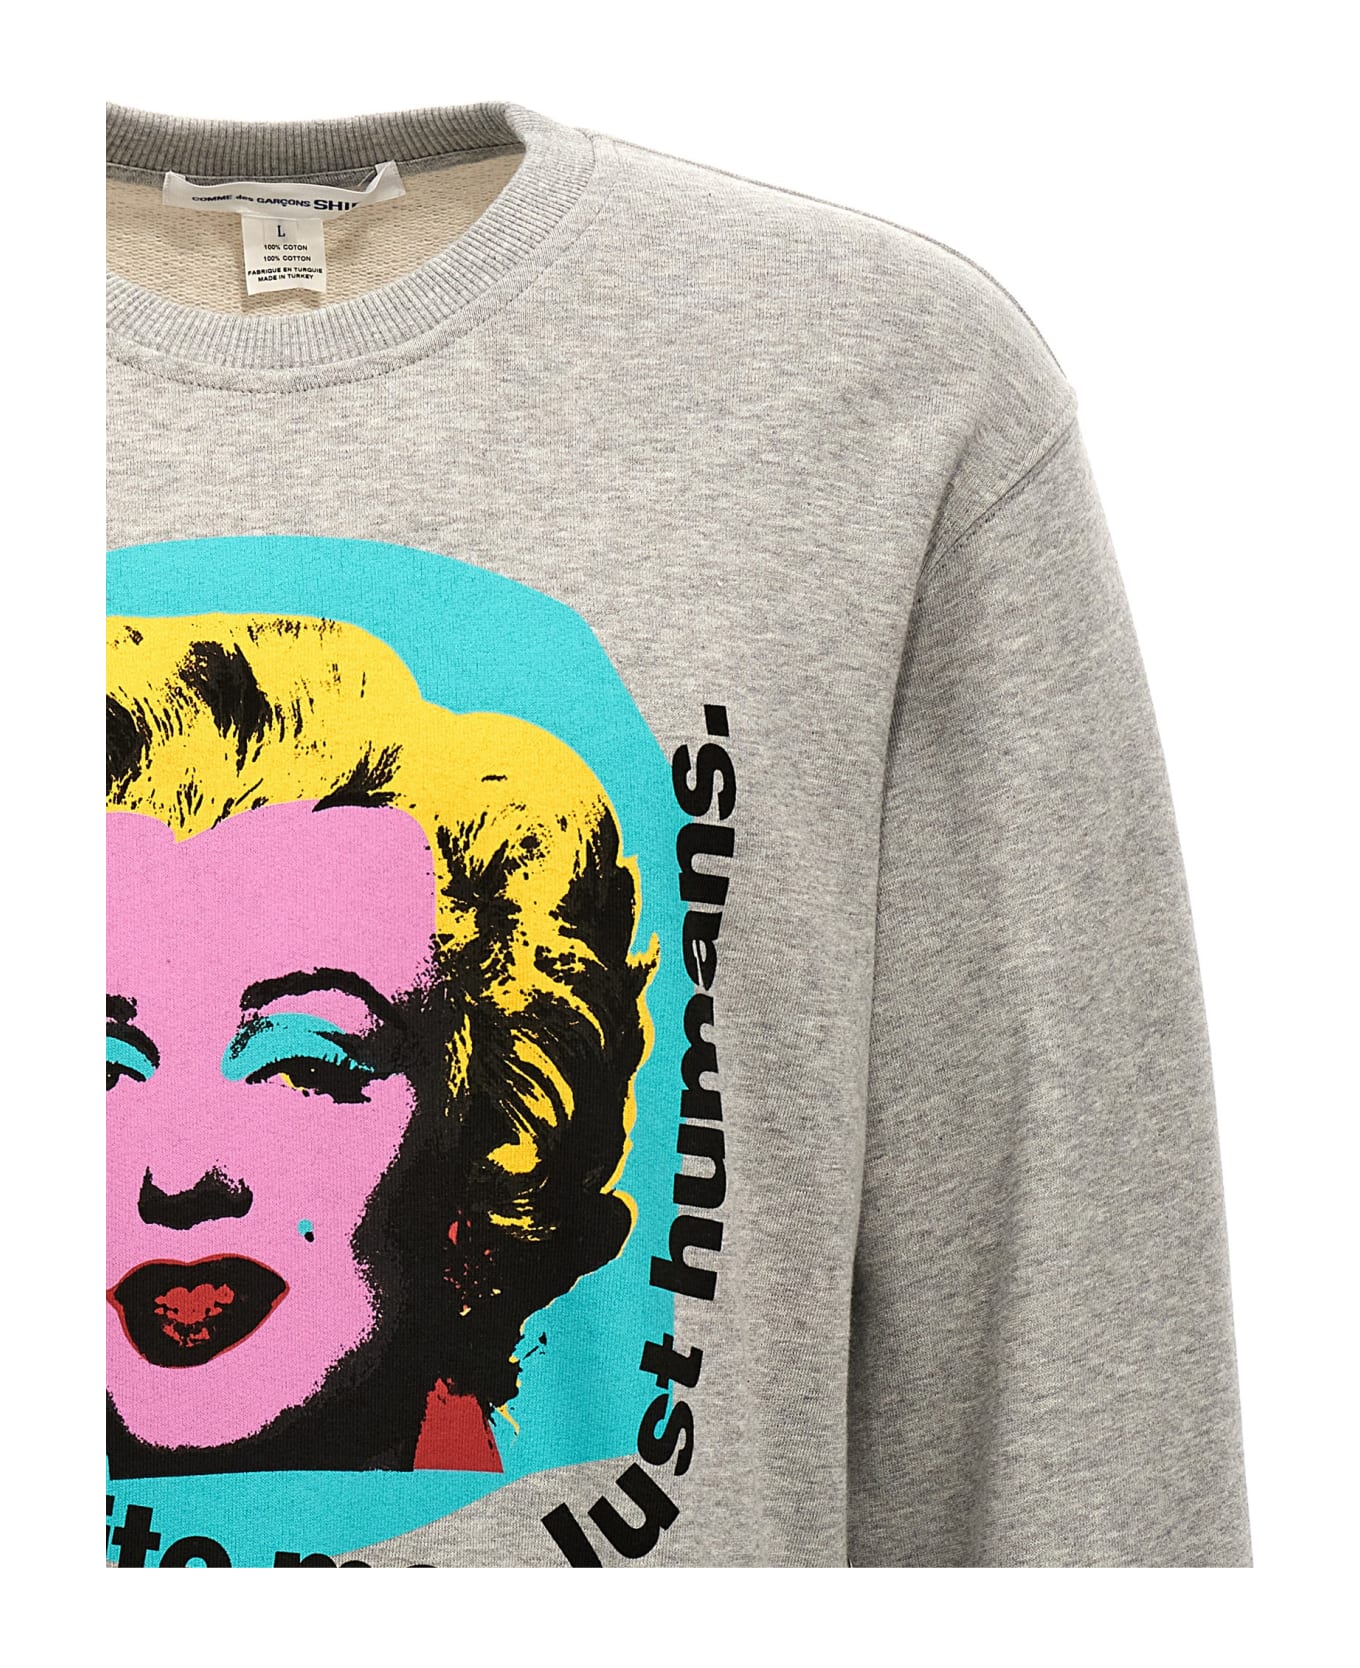 Comme des Garçons Shirt 'andy Warhol' Sweatshirt - Gray フリース